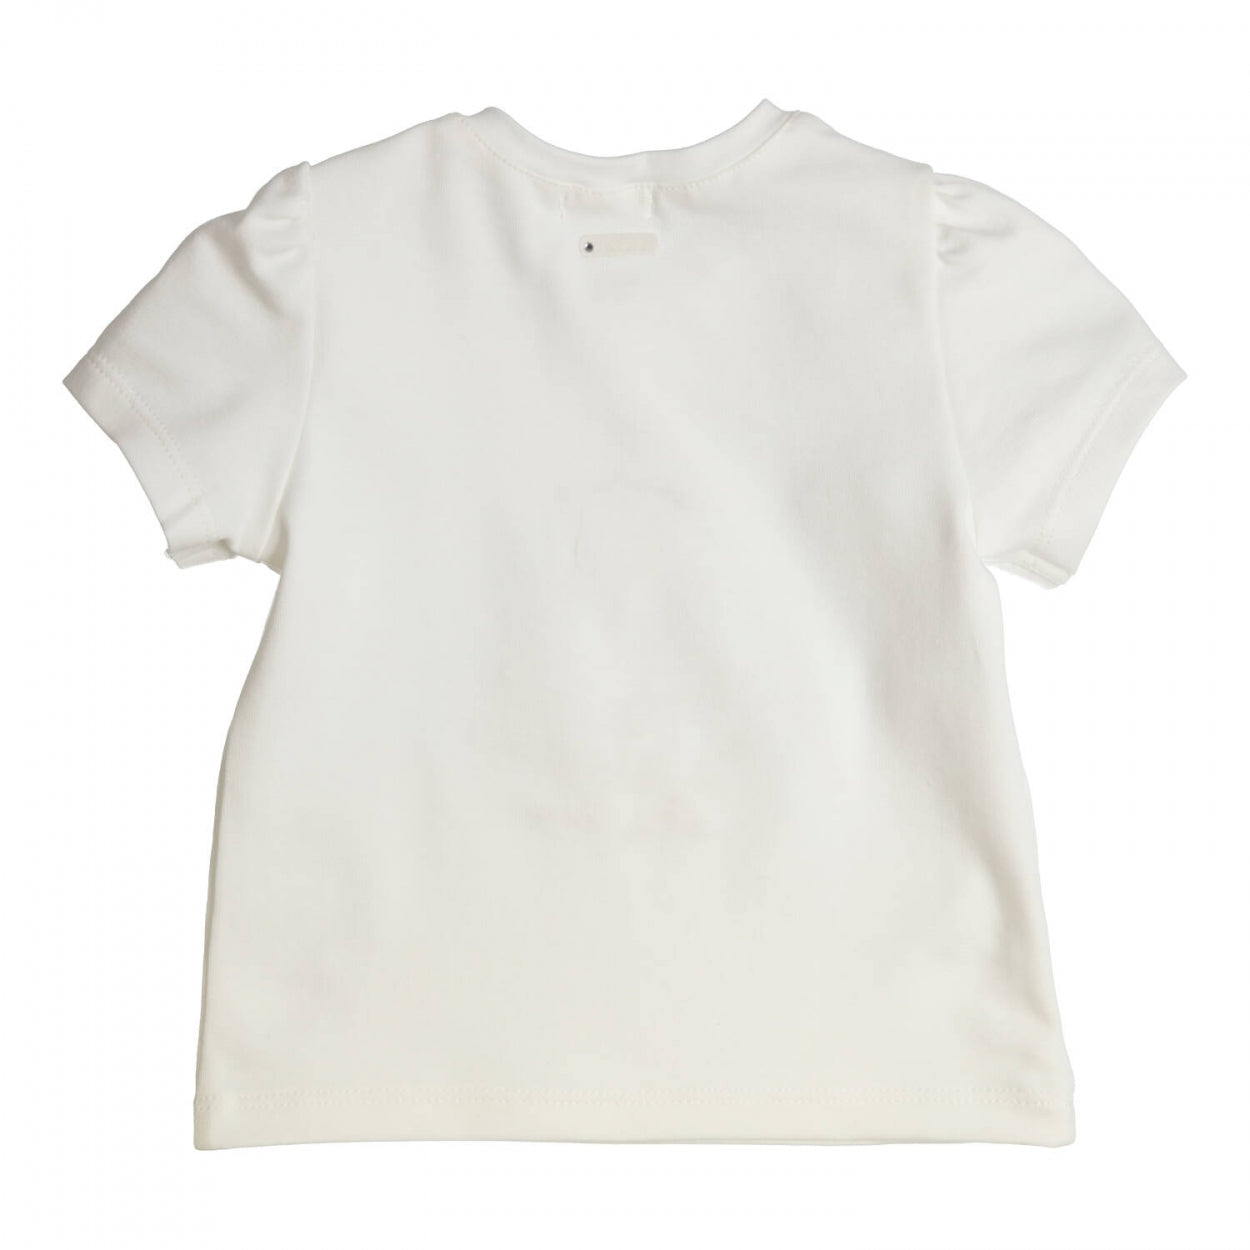 Meisjes T-shirt Aerobic van Gymp in de kleur Off White - Gold in maat 86.